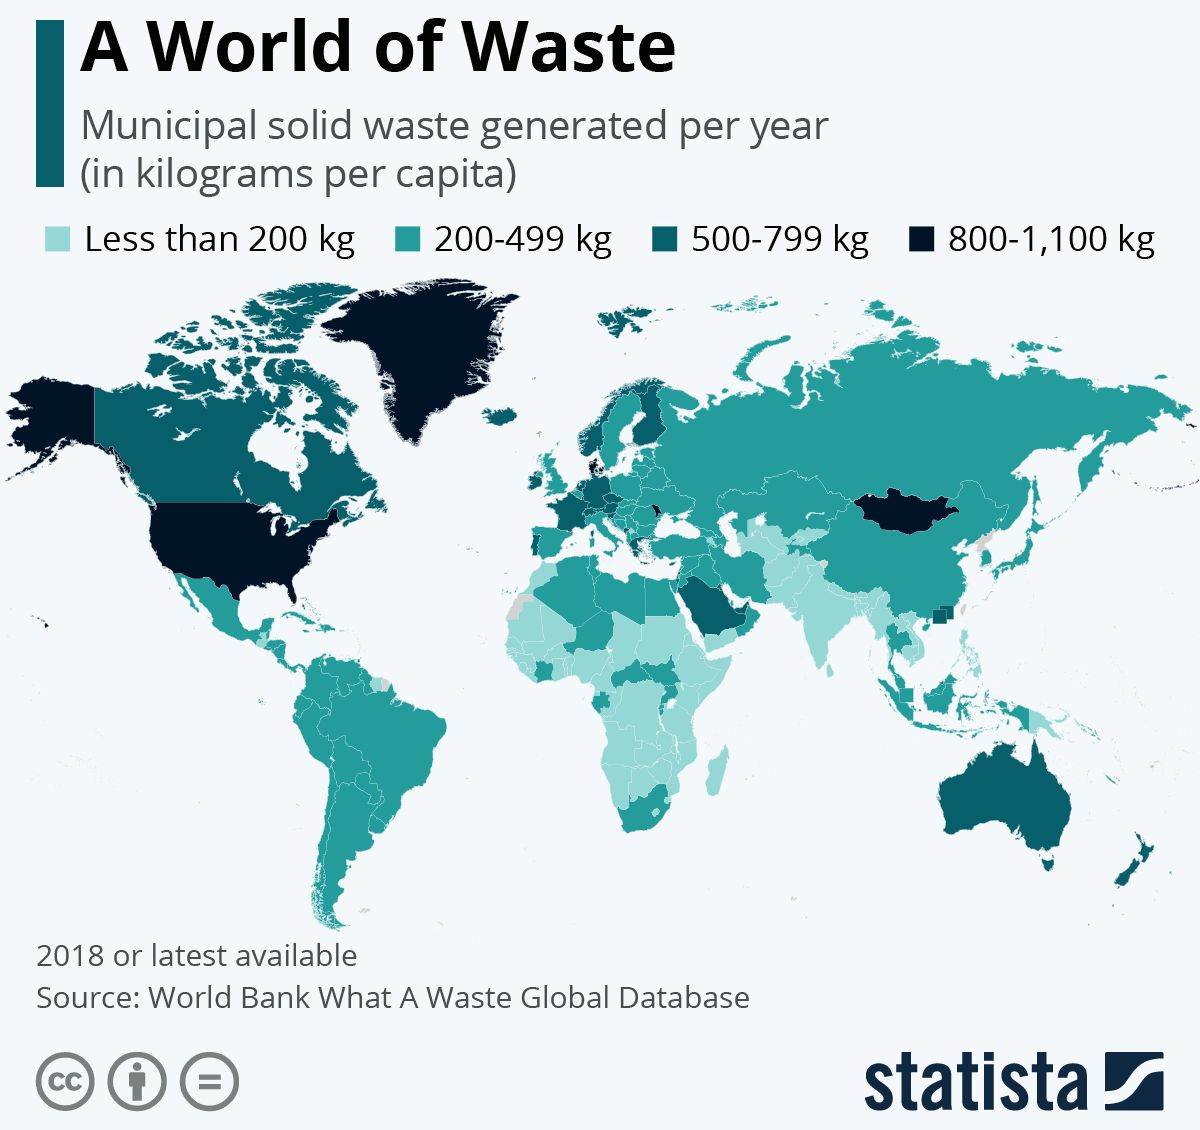  Otpad smeće u svijetu.jpg 